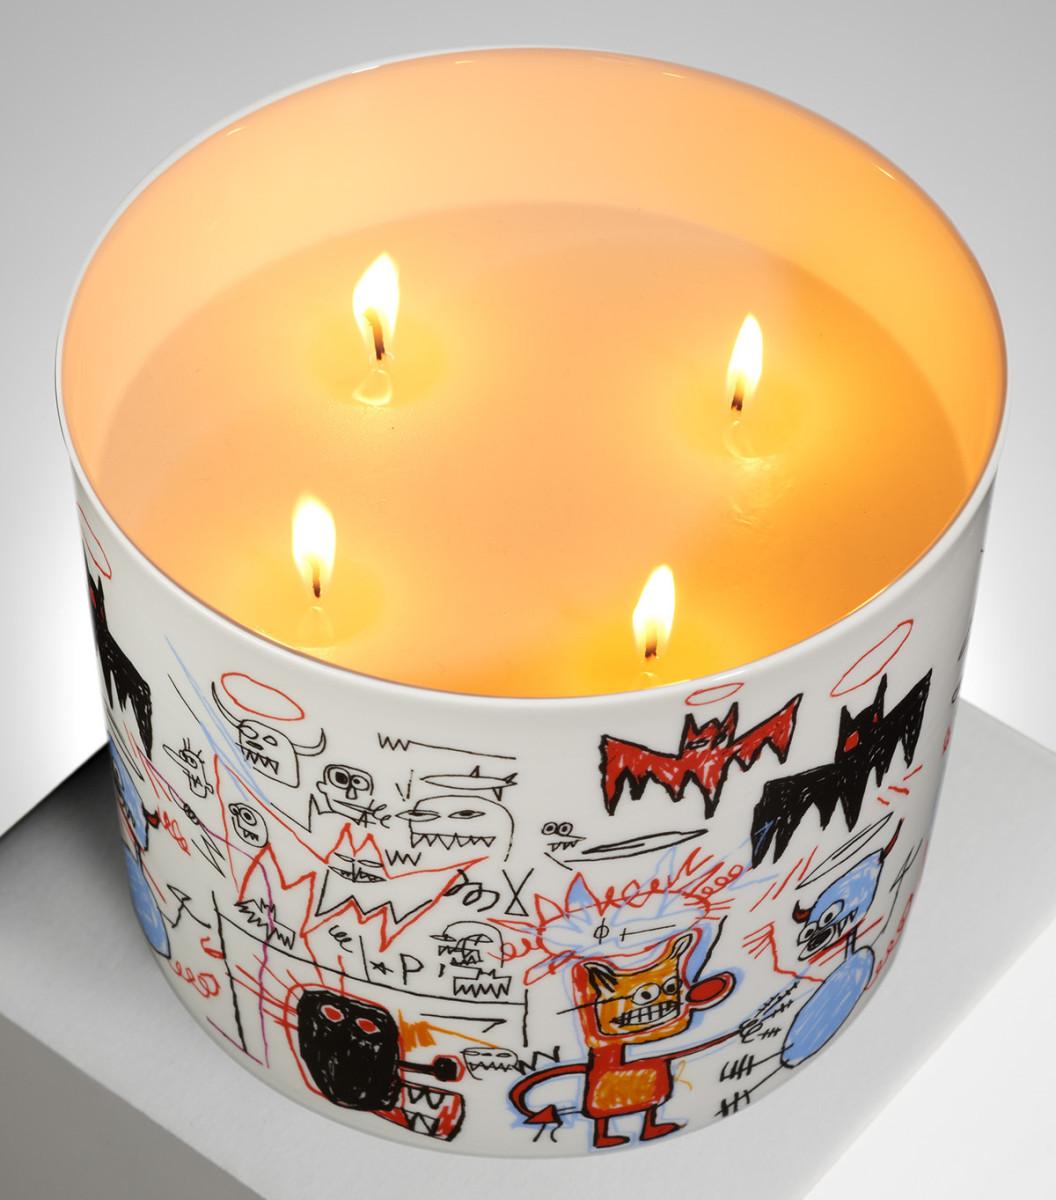 Large scented candle
Limoges porcelain holder
Measure: 6.3